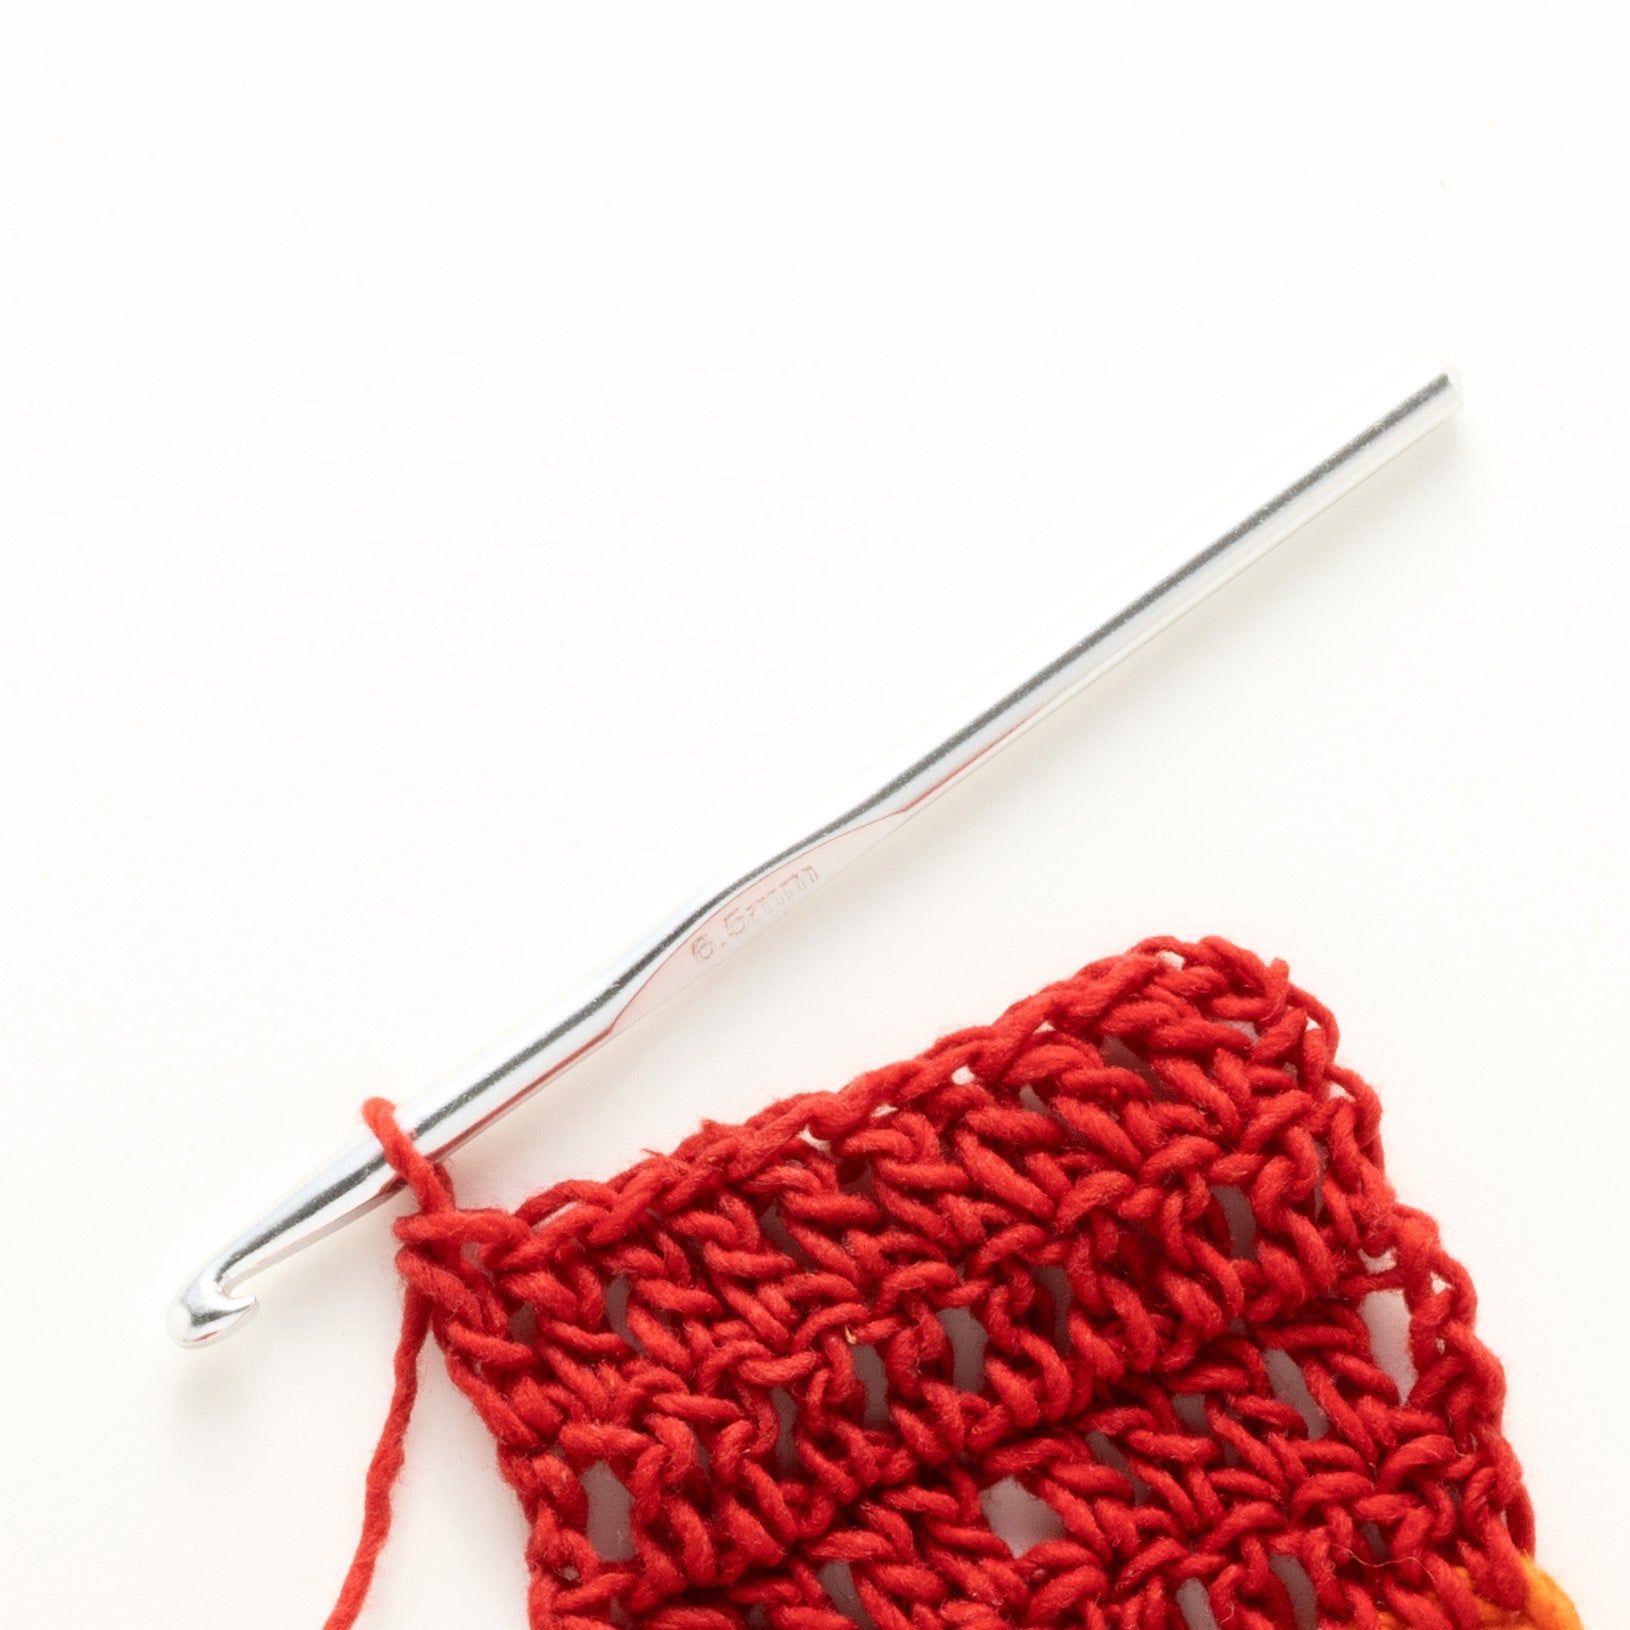 Aluminum Crochet Hook for Potholder Kits – Harrisville Designs, Inc.